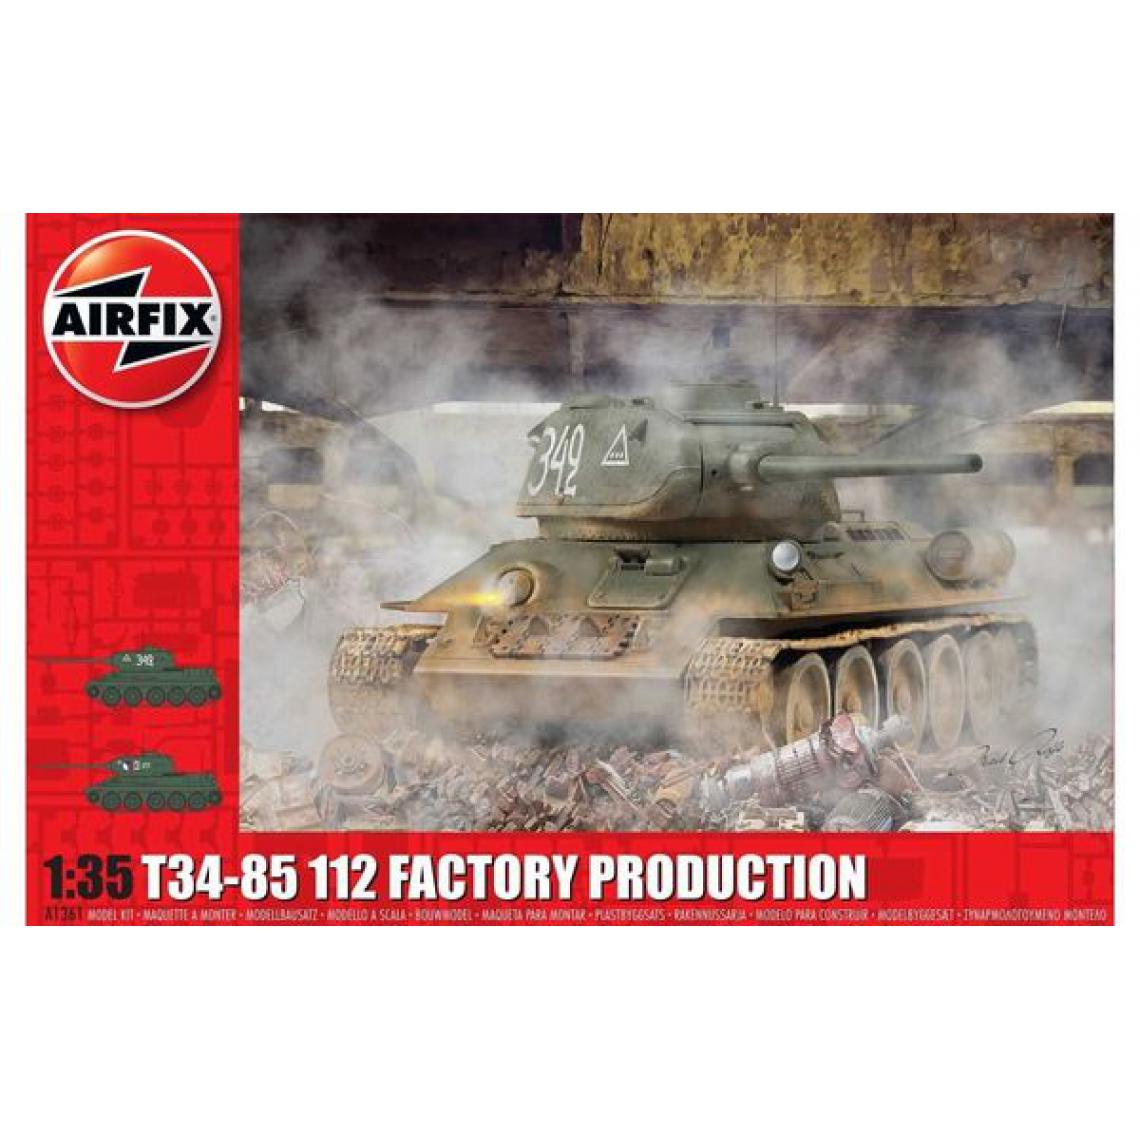 Airfix - T34/85 II2 Factory Production - 1:35e - Airfix - Voitures RC